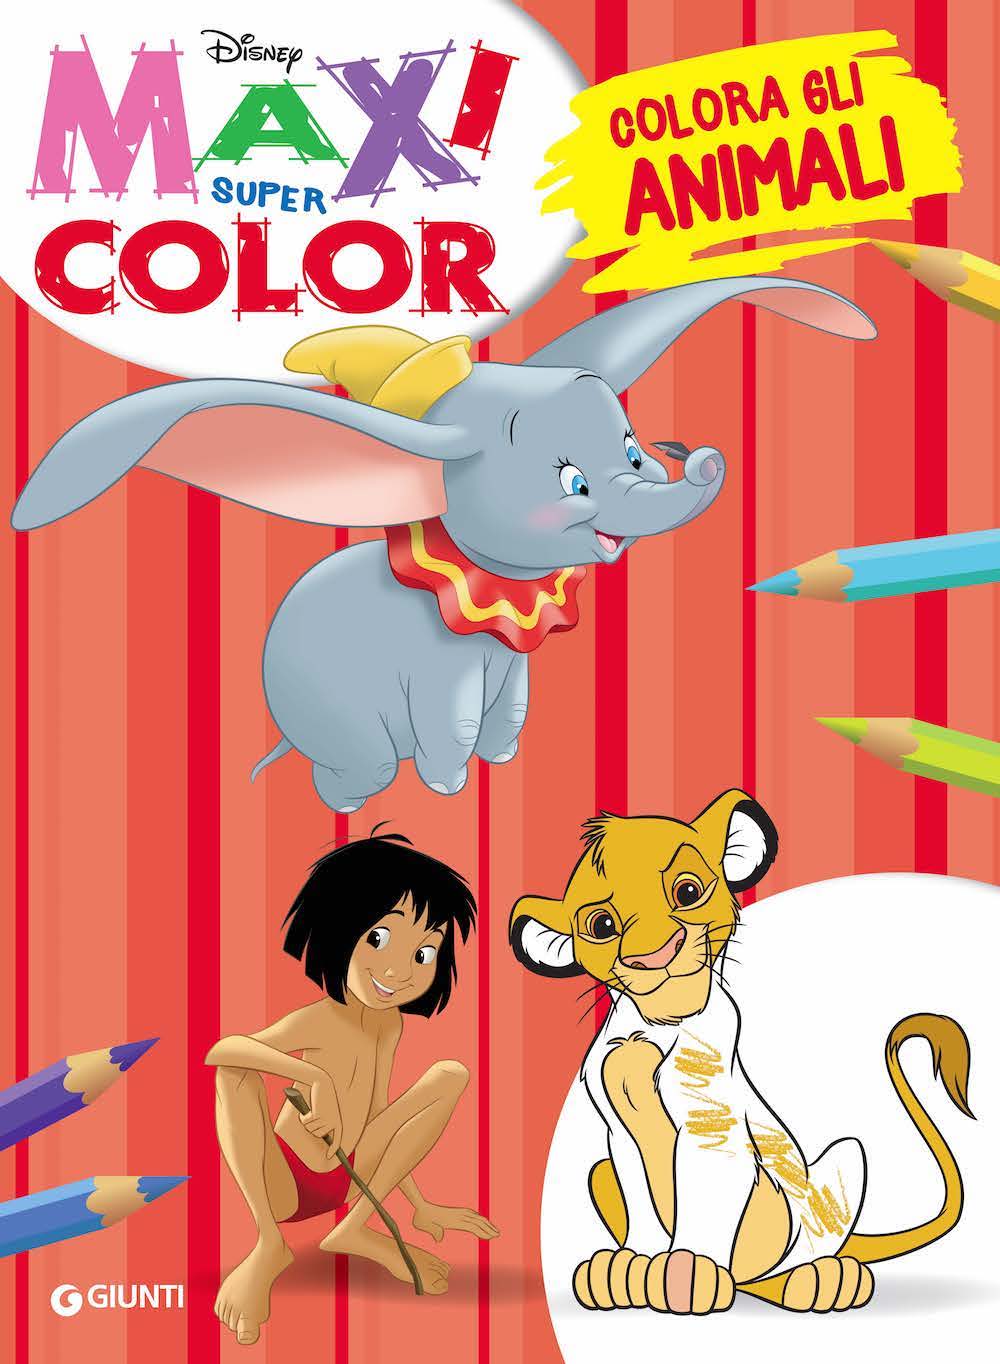 Maxi Supercolor - Colora gli animali::Dumbo, Il re leone, Il libro della giungla